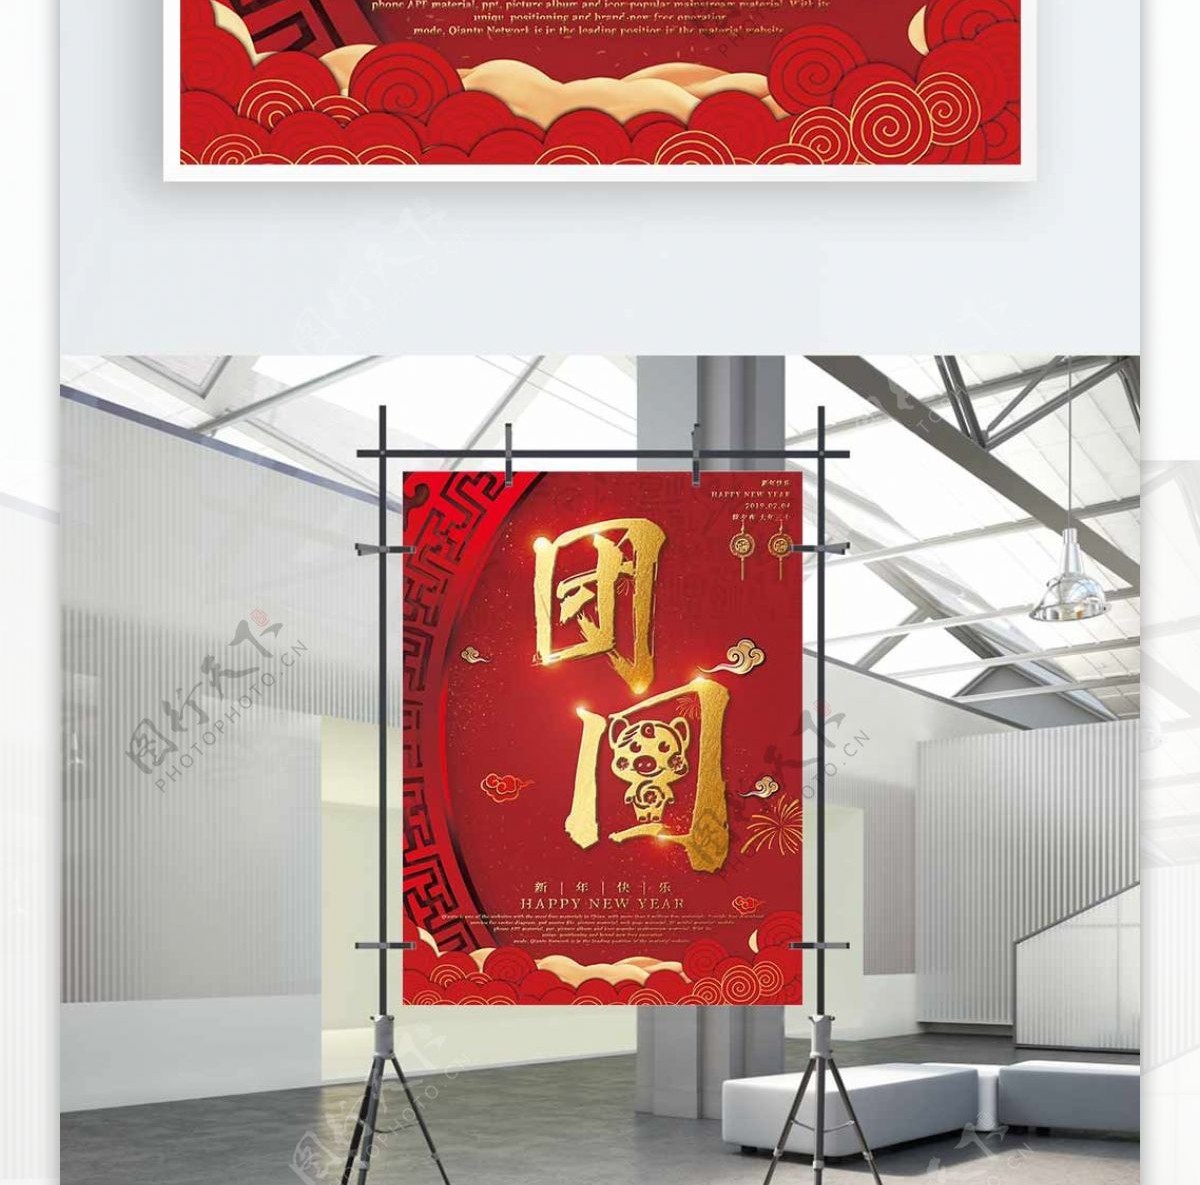 原创简约简约创意中国风过年主题系列海报